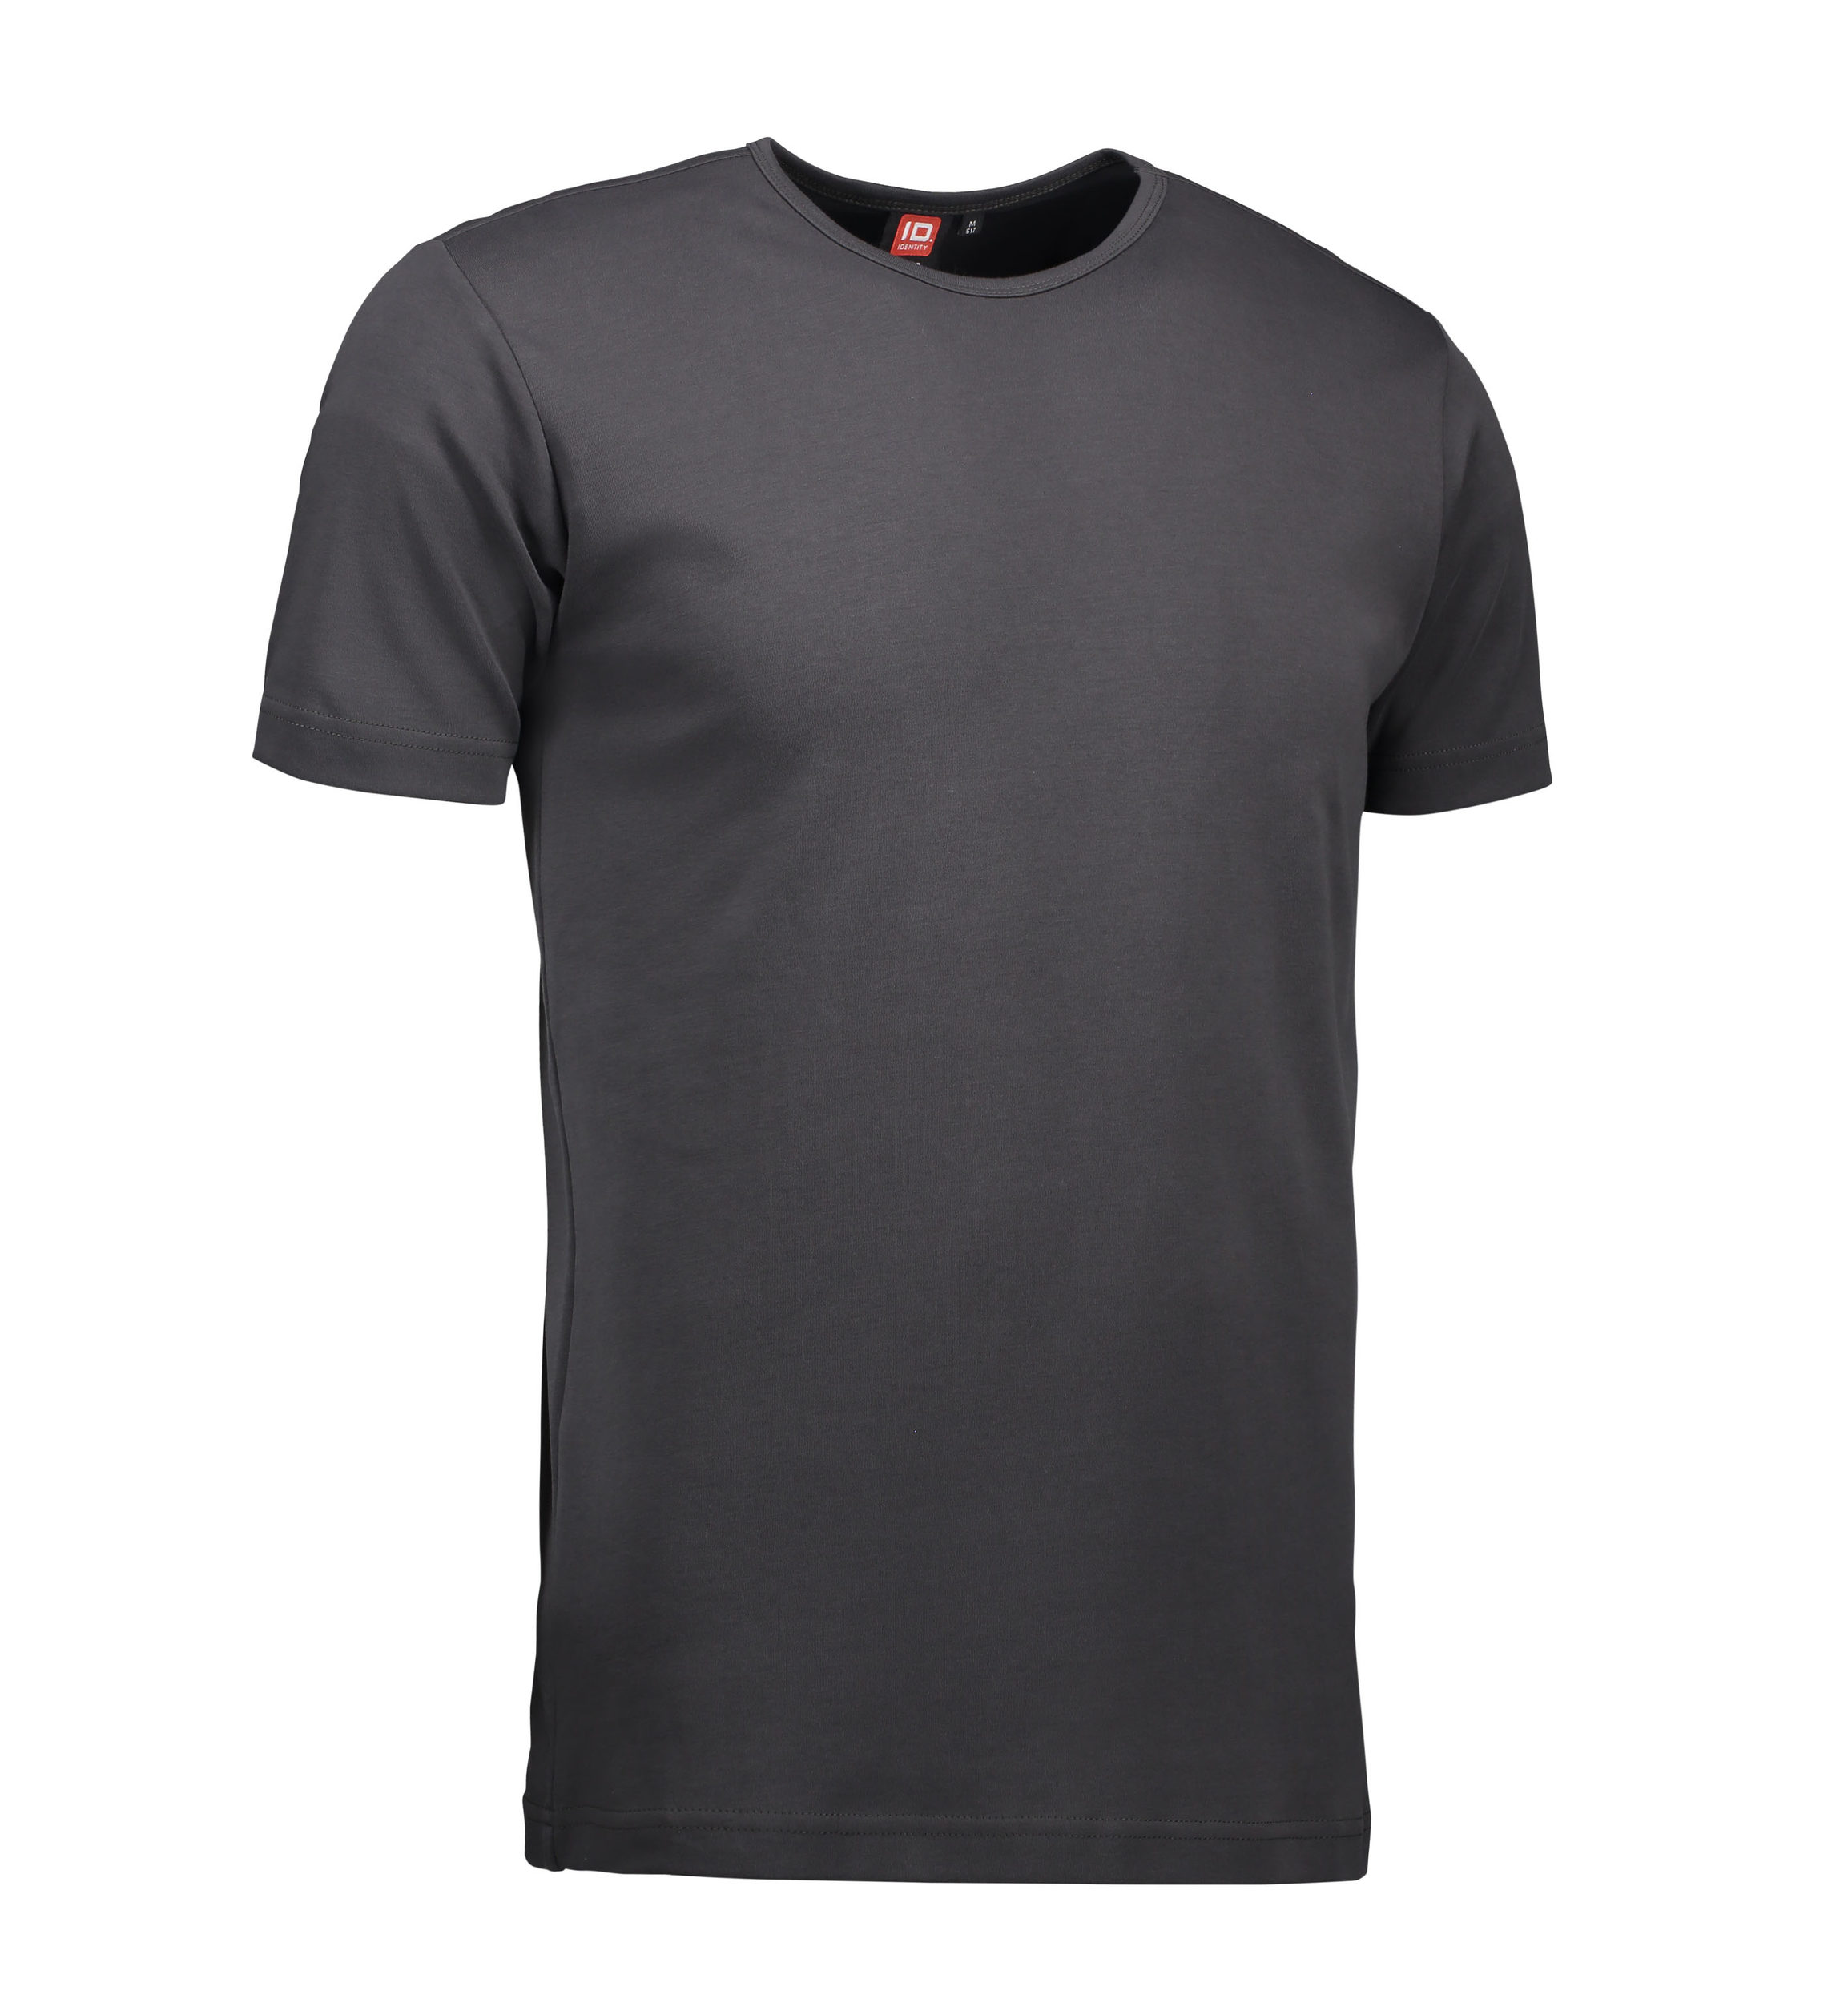 Billede af Koks grå t-shirt med rund hals til mænd - S hos Sygeplejebutikken.dk